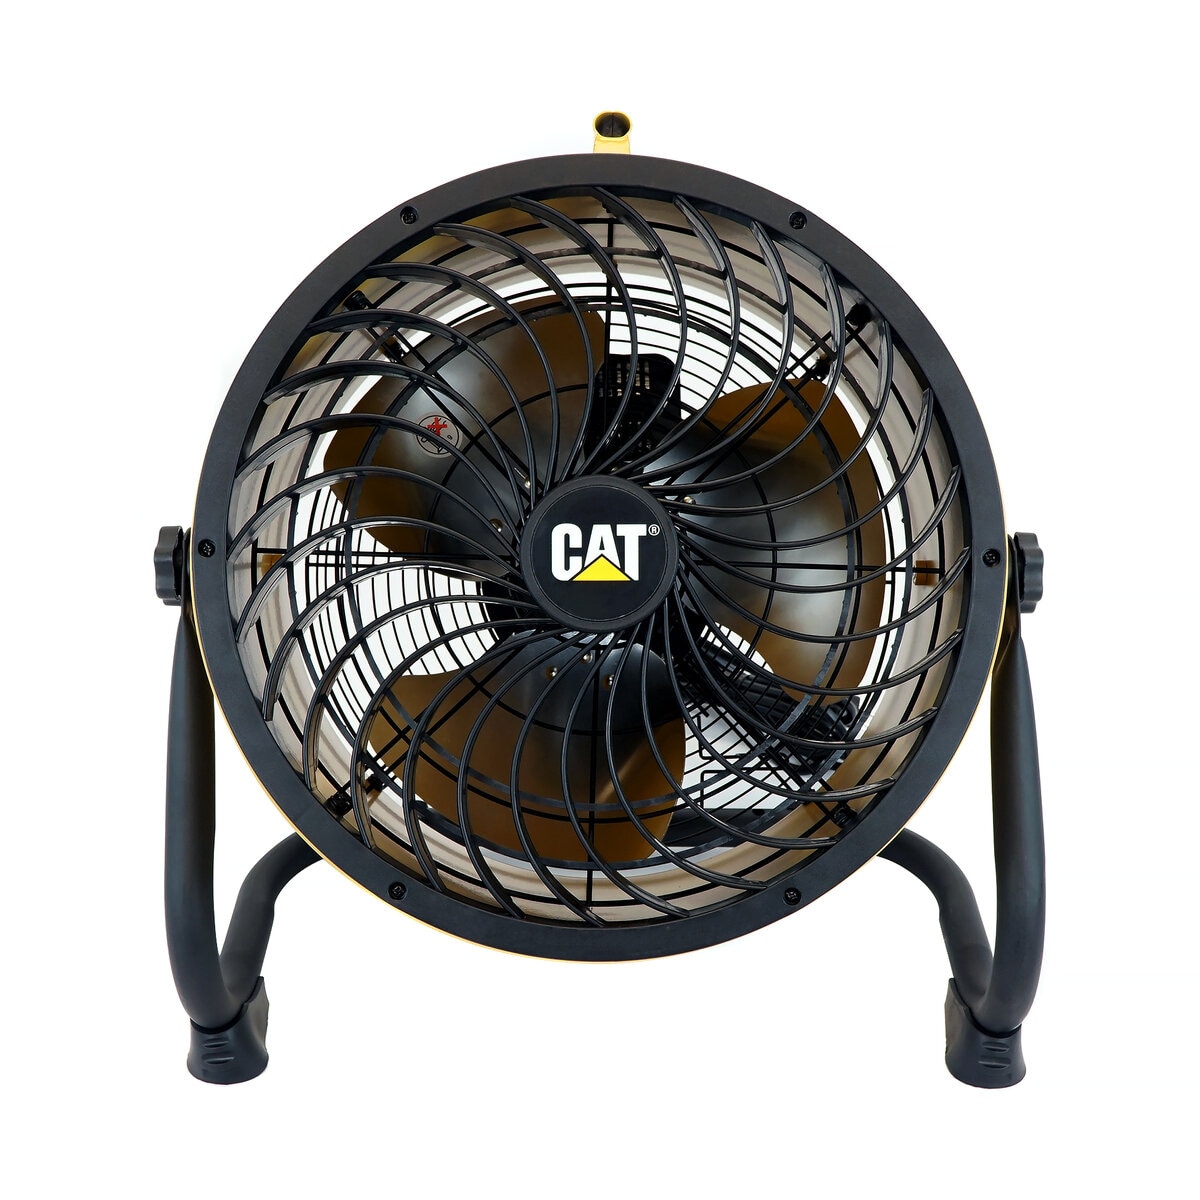 CATERPILLAR キャタピラー CAT サーキュレータ- 45cm 工場扇 業務用 扇風機 送風機 壁掛け 床置き 屋外 EEMC-18ACBK ブラック - 3